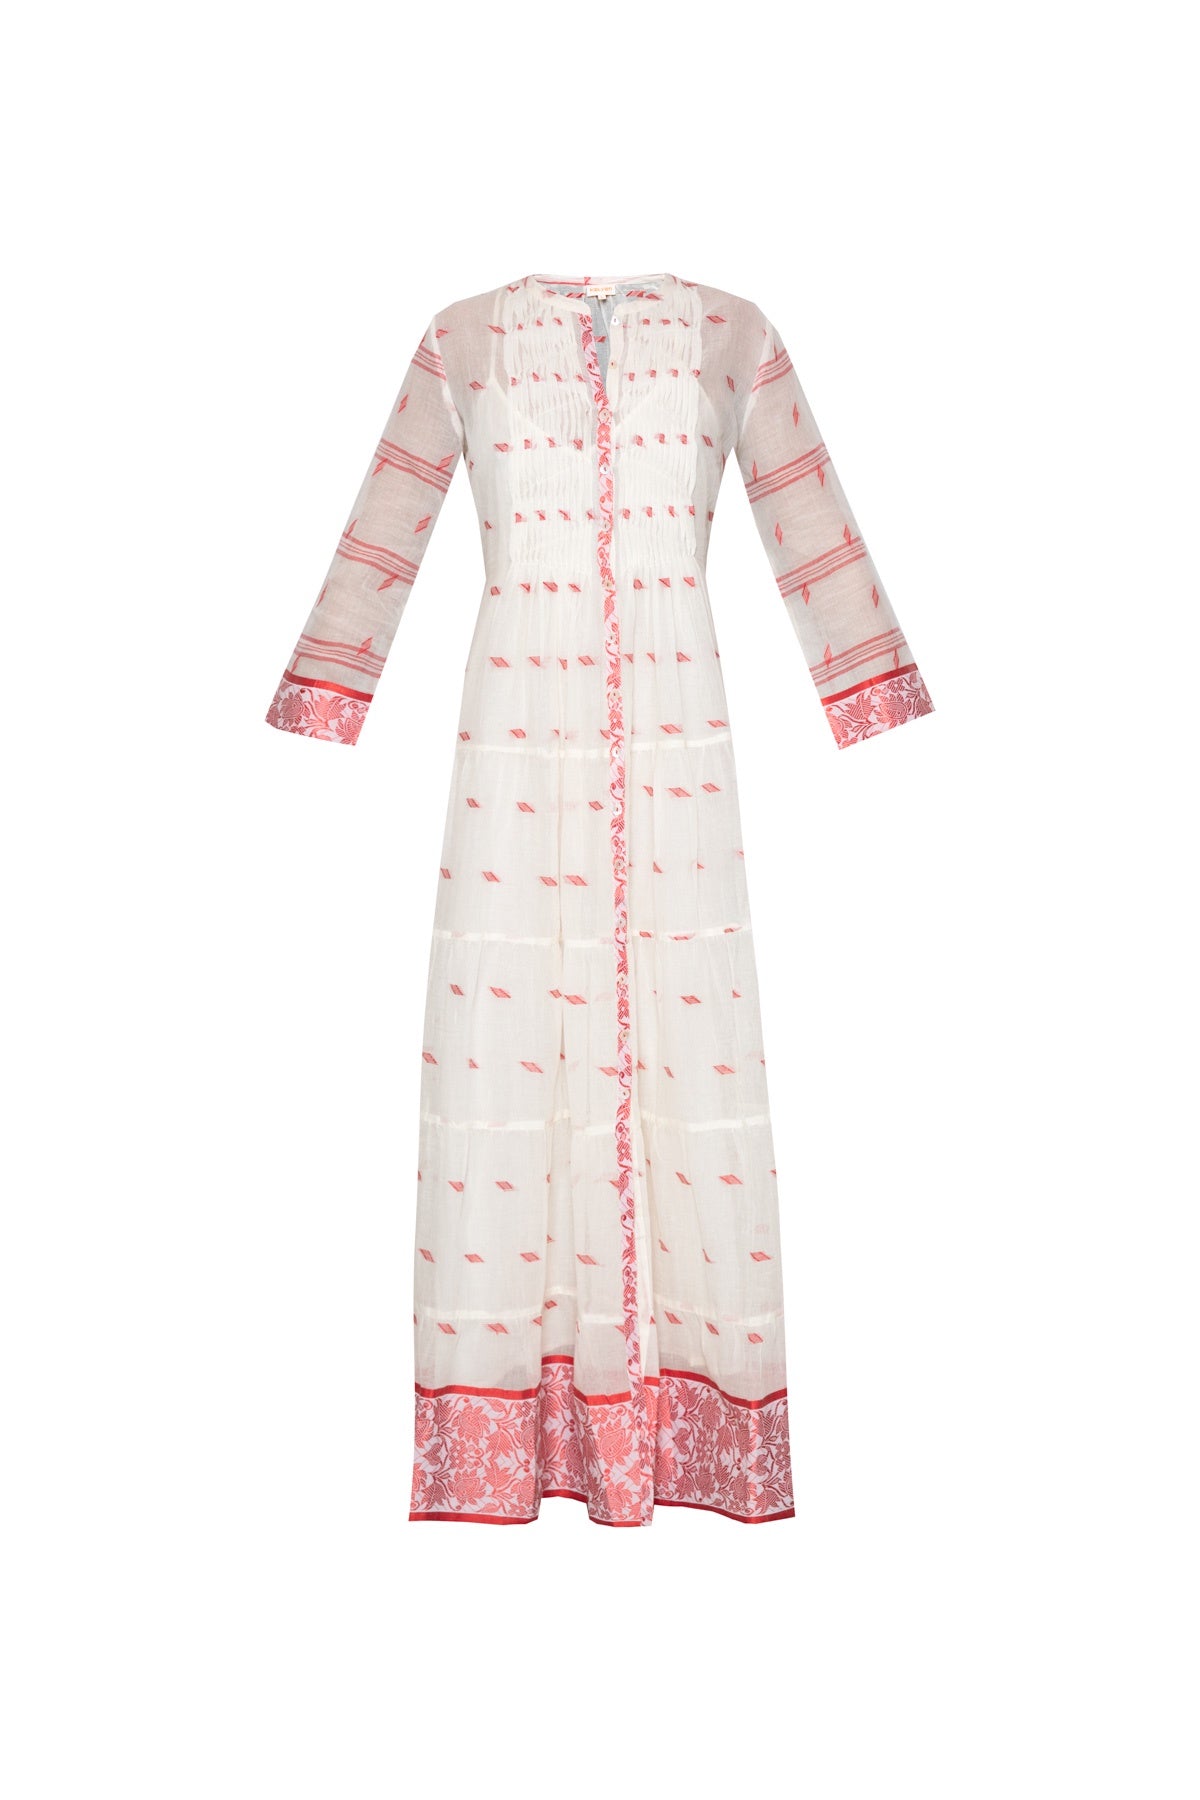 Longfrill Cotton Dress - Off White & Pink